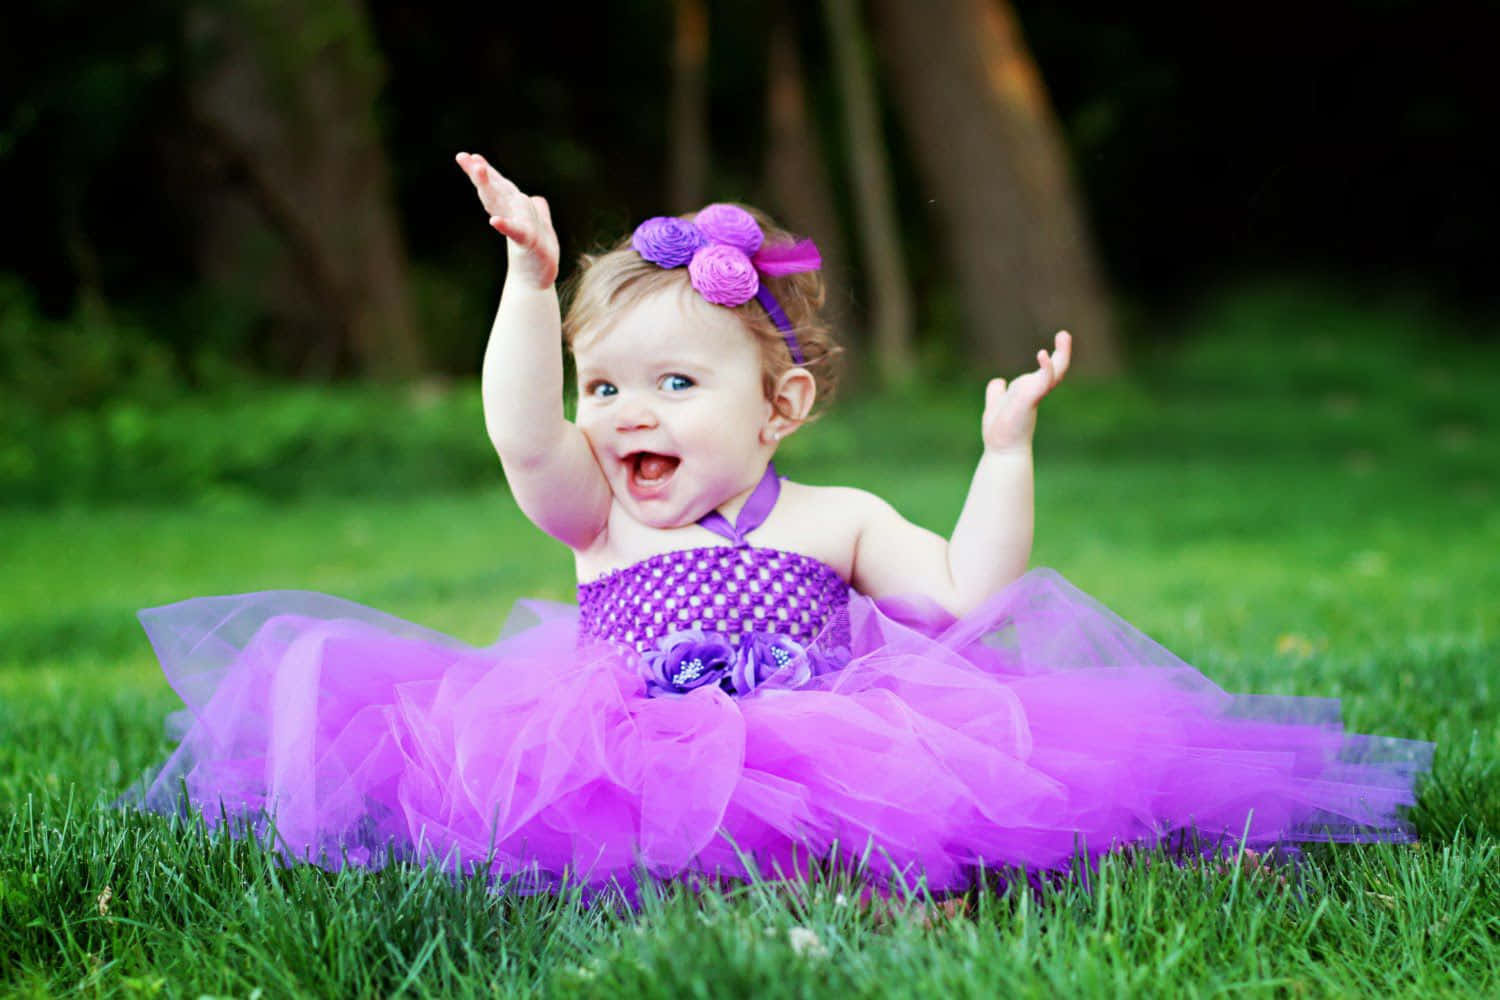 Unagran Sonrisa De Un Bebé Es Todo Lo Que Se Necesita Para Alegrar El Día.